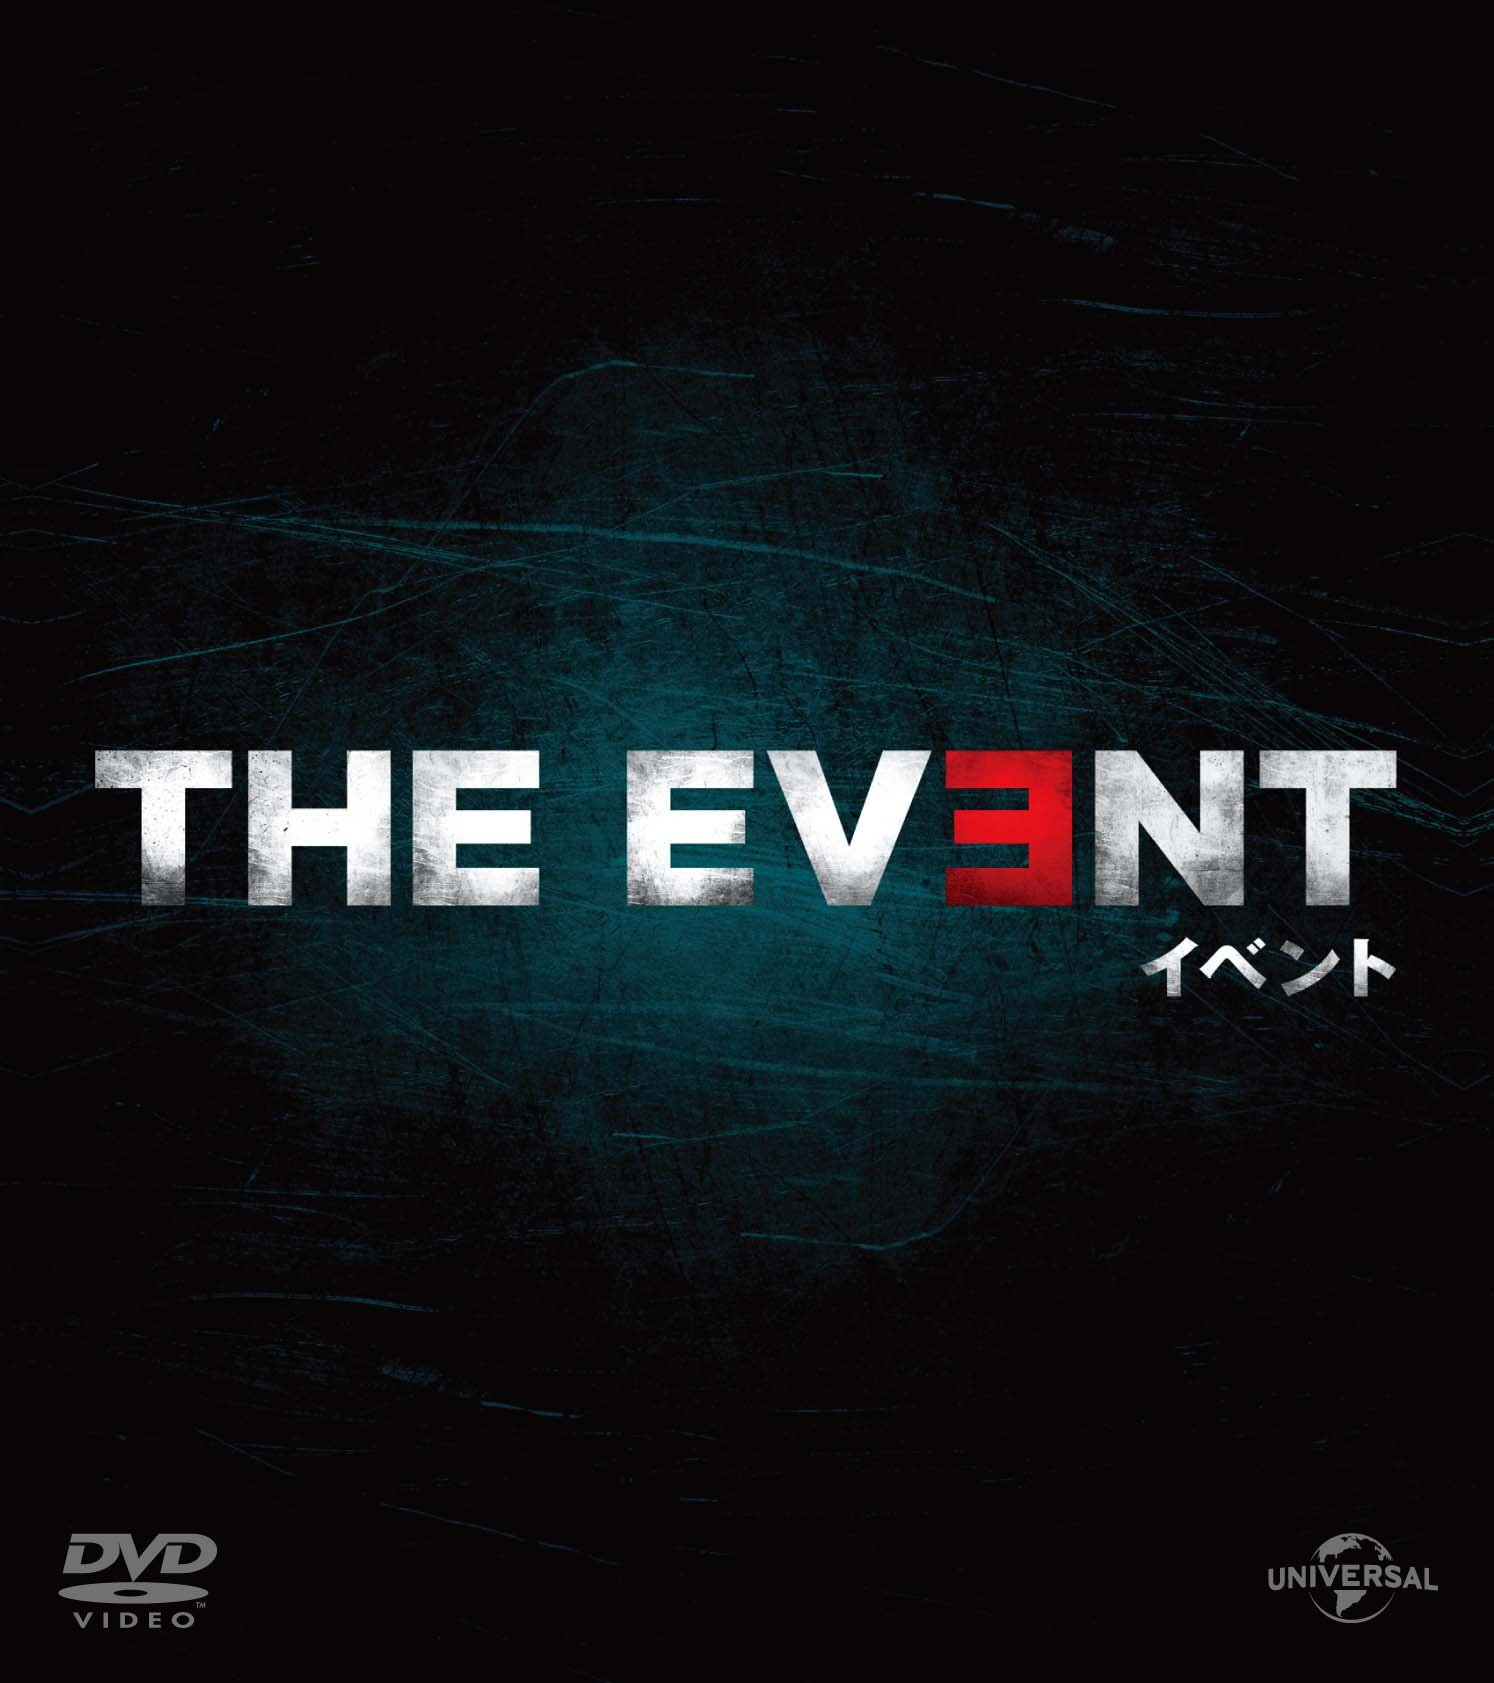 THE EVENT/Cxg o[pbN [DVD]